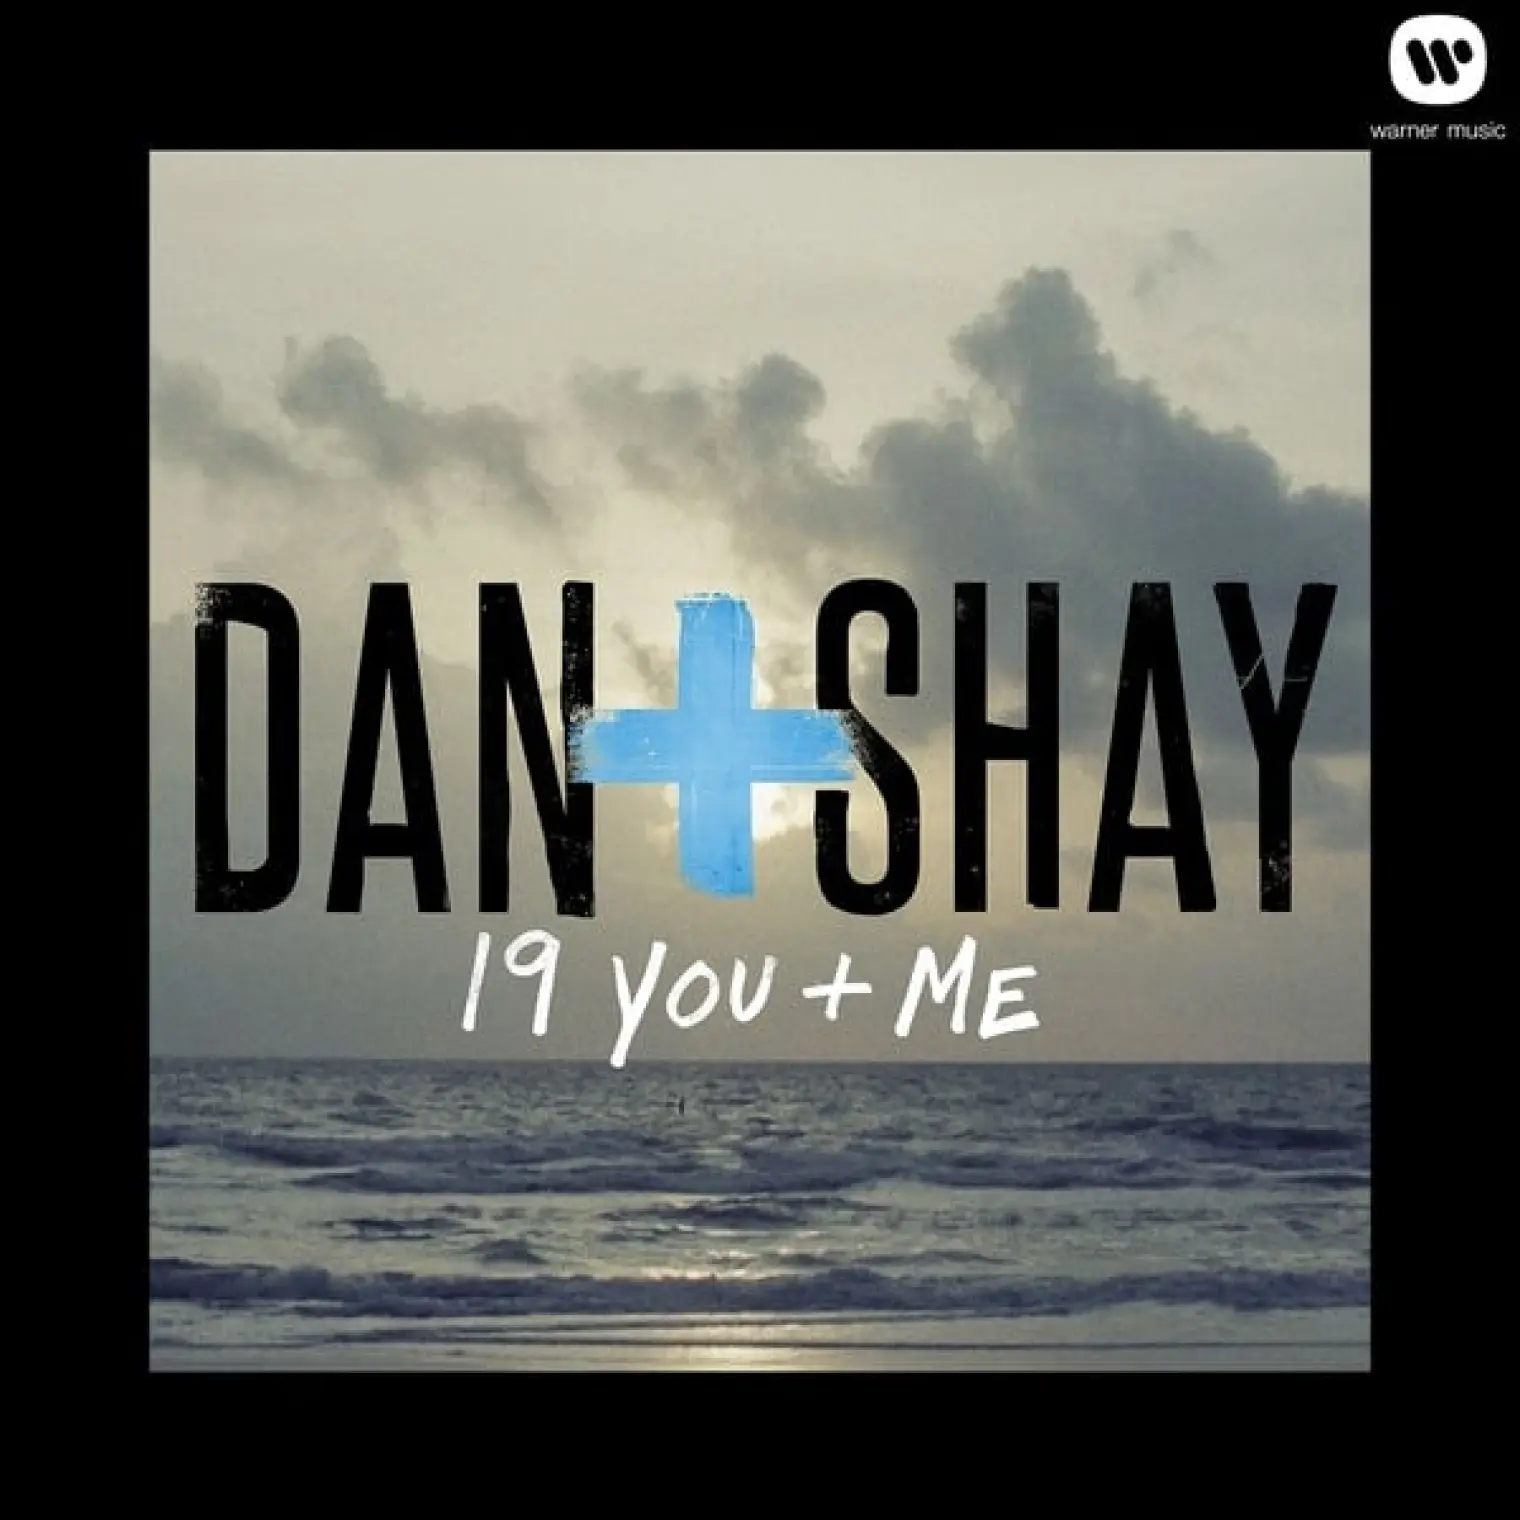 19 You + Me -  Dan + Shay 